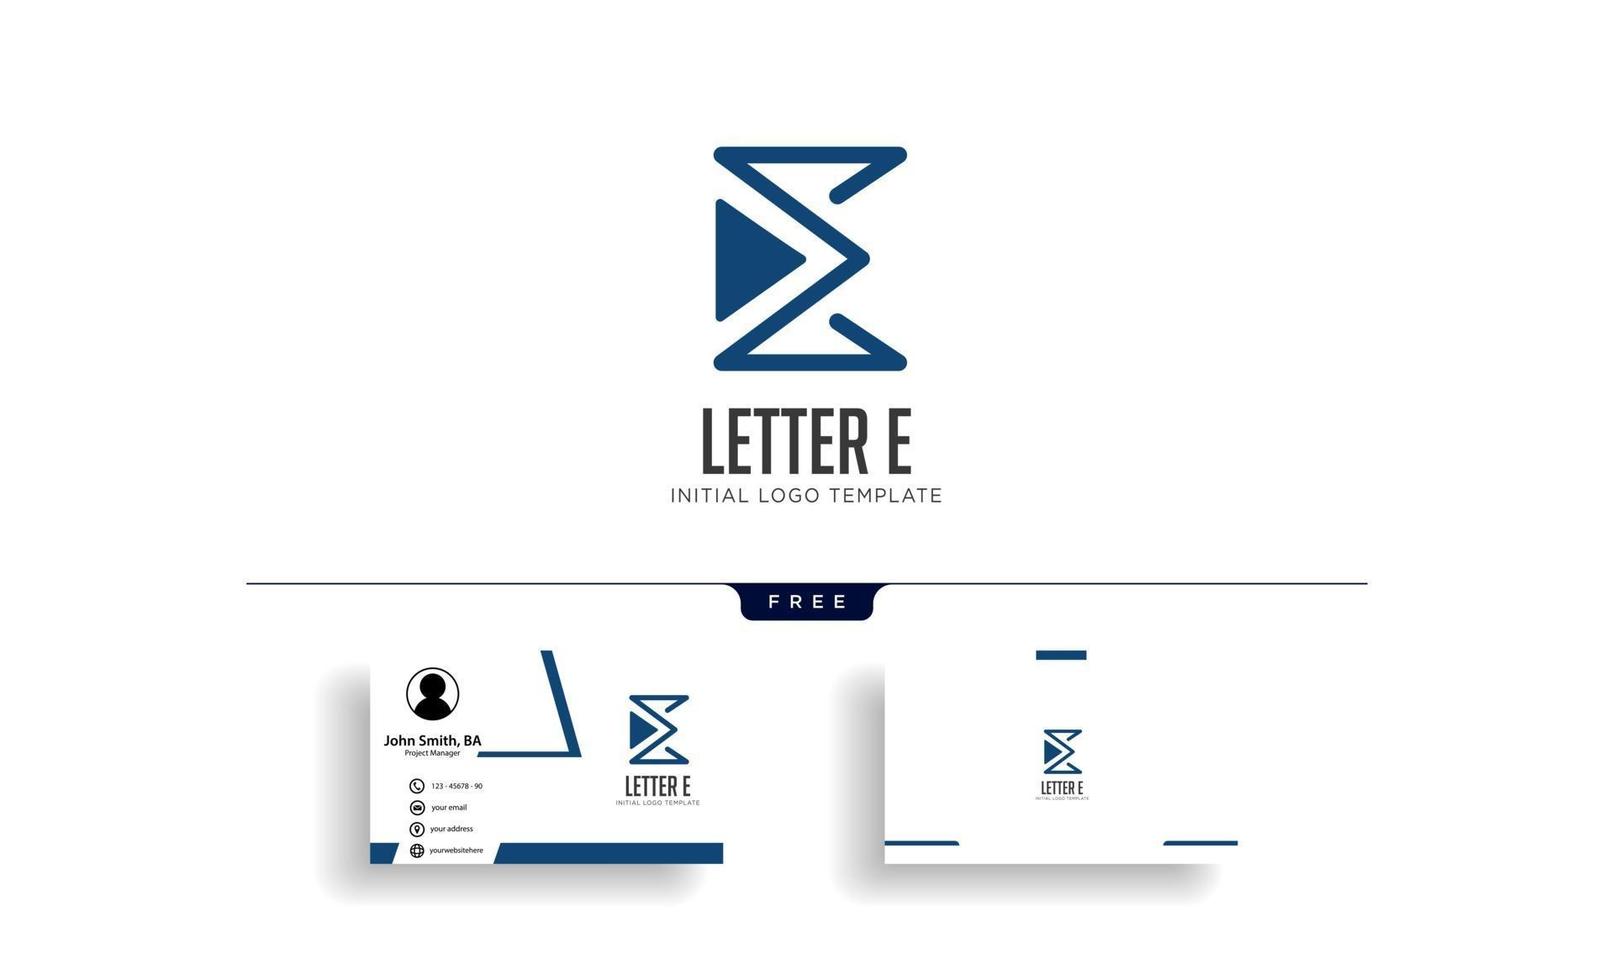 biglietto da visita dell'illustrazione di vettore del modello di logo creativo della lettera e monoline